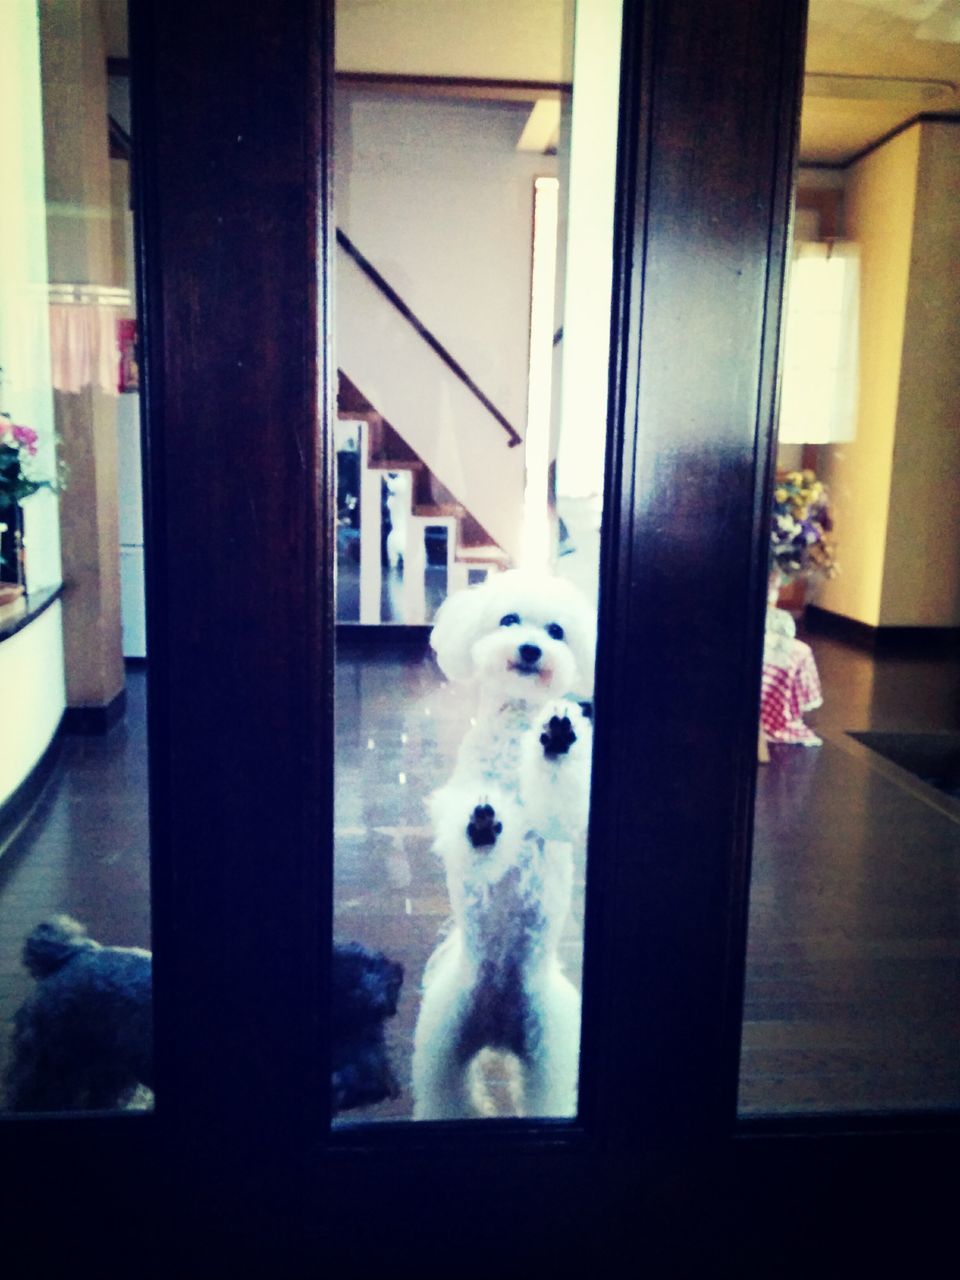 I Love My Dog BichonfriseOpen The Door!!!